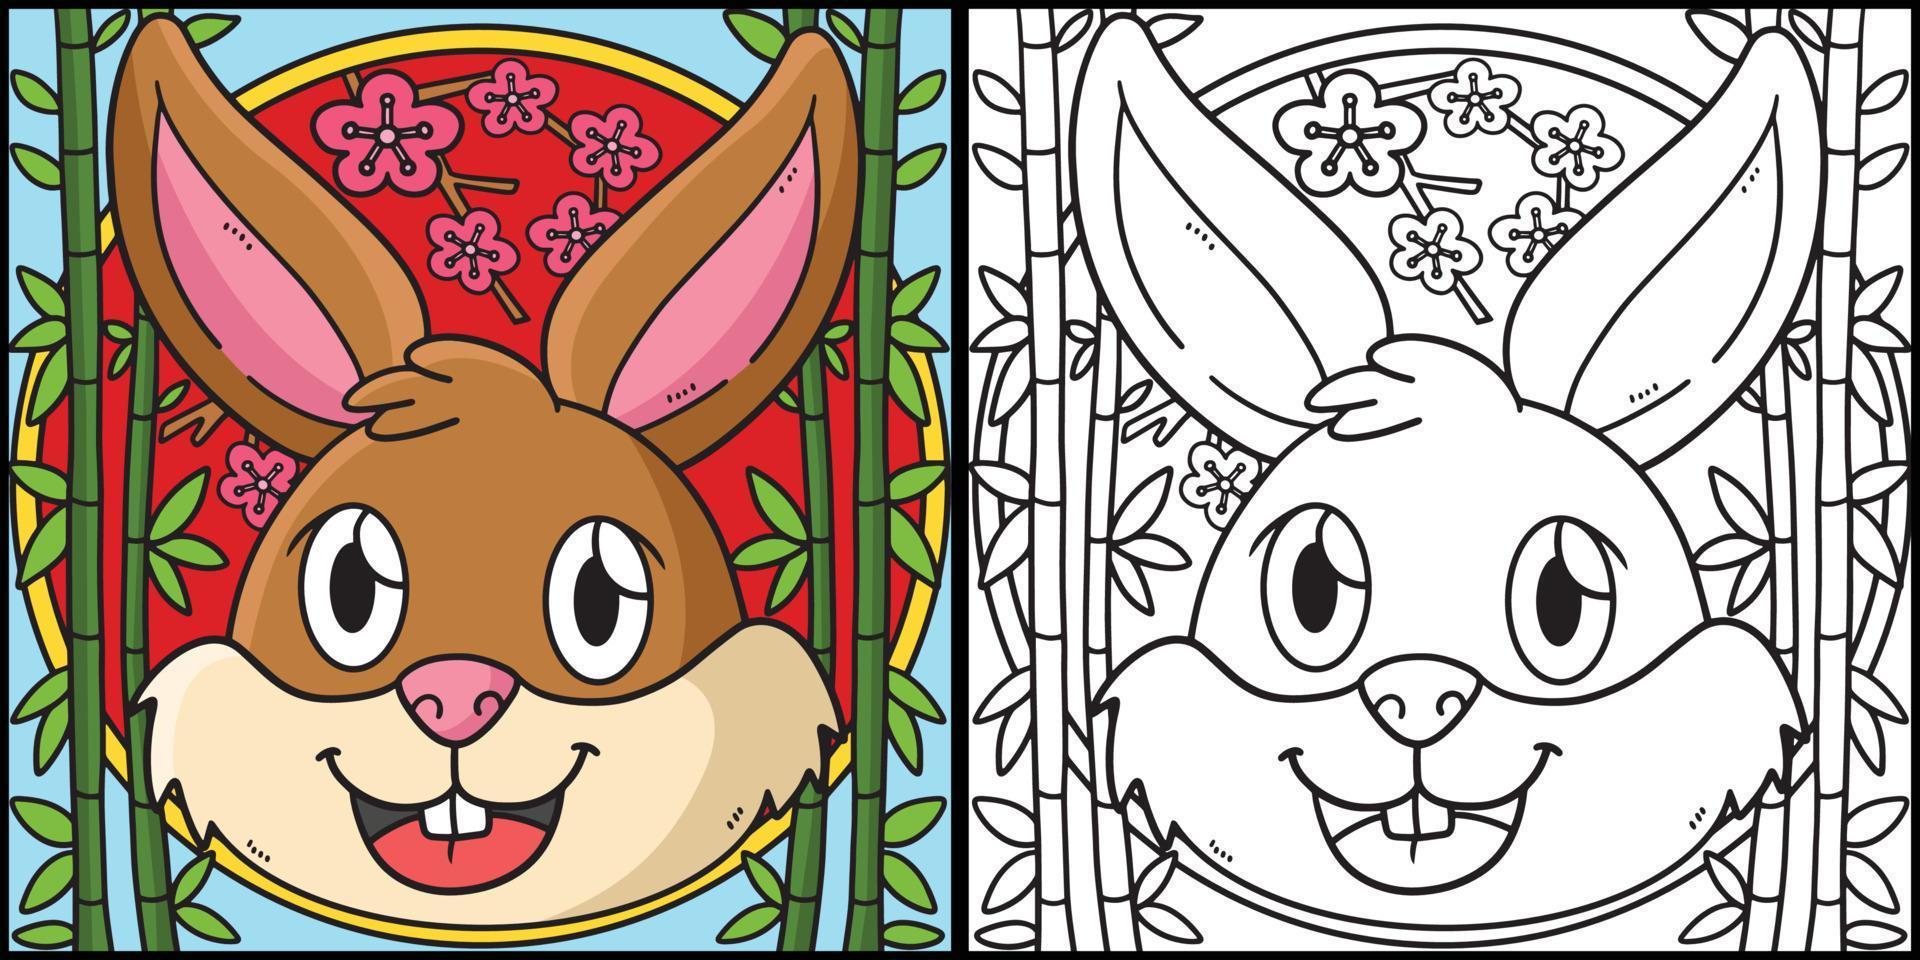 cabeça de coelho para colorir ilustração colorida vetor